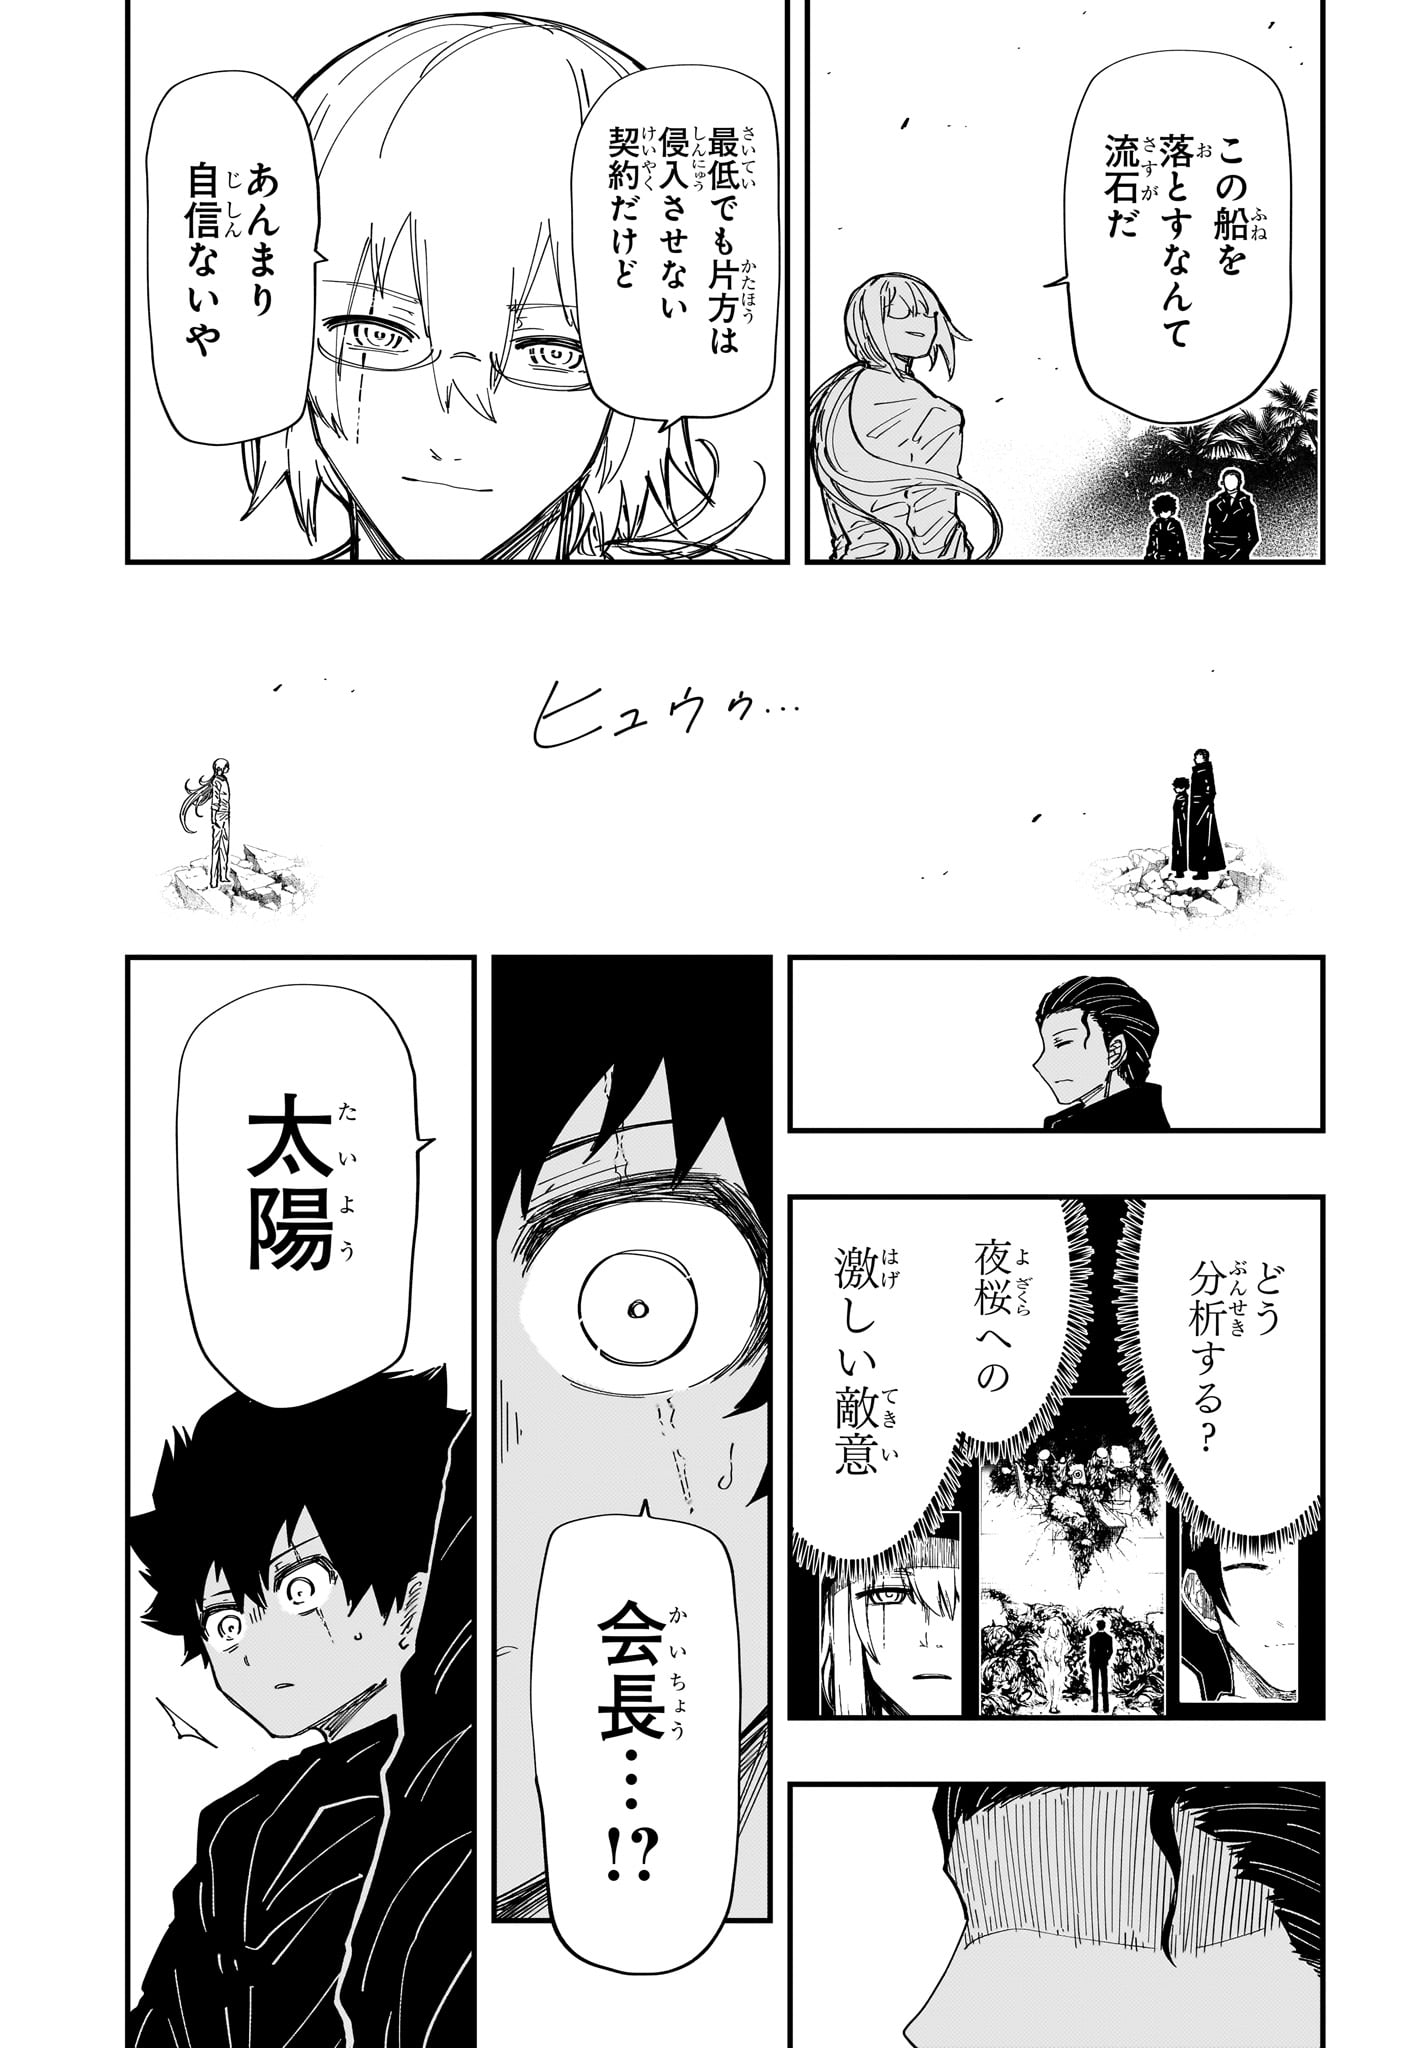 Yozakura-san Chi no Daisakusen - Chapter 227 - Page 17